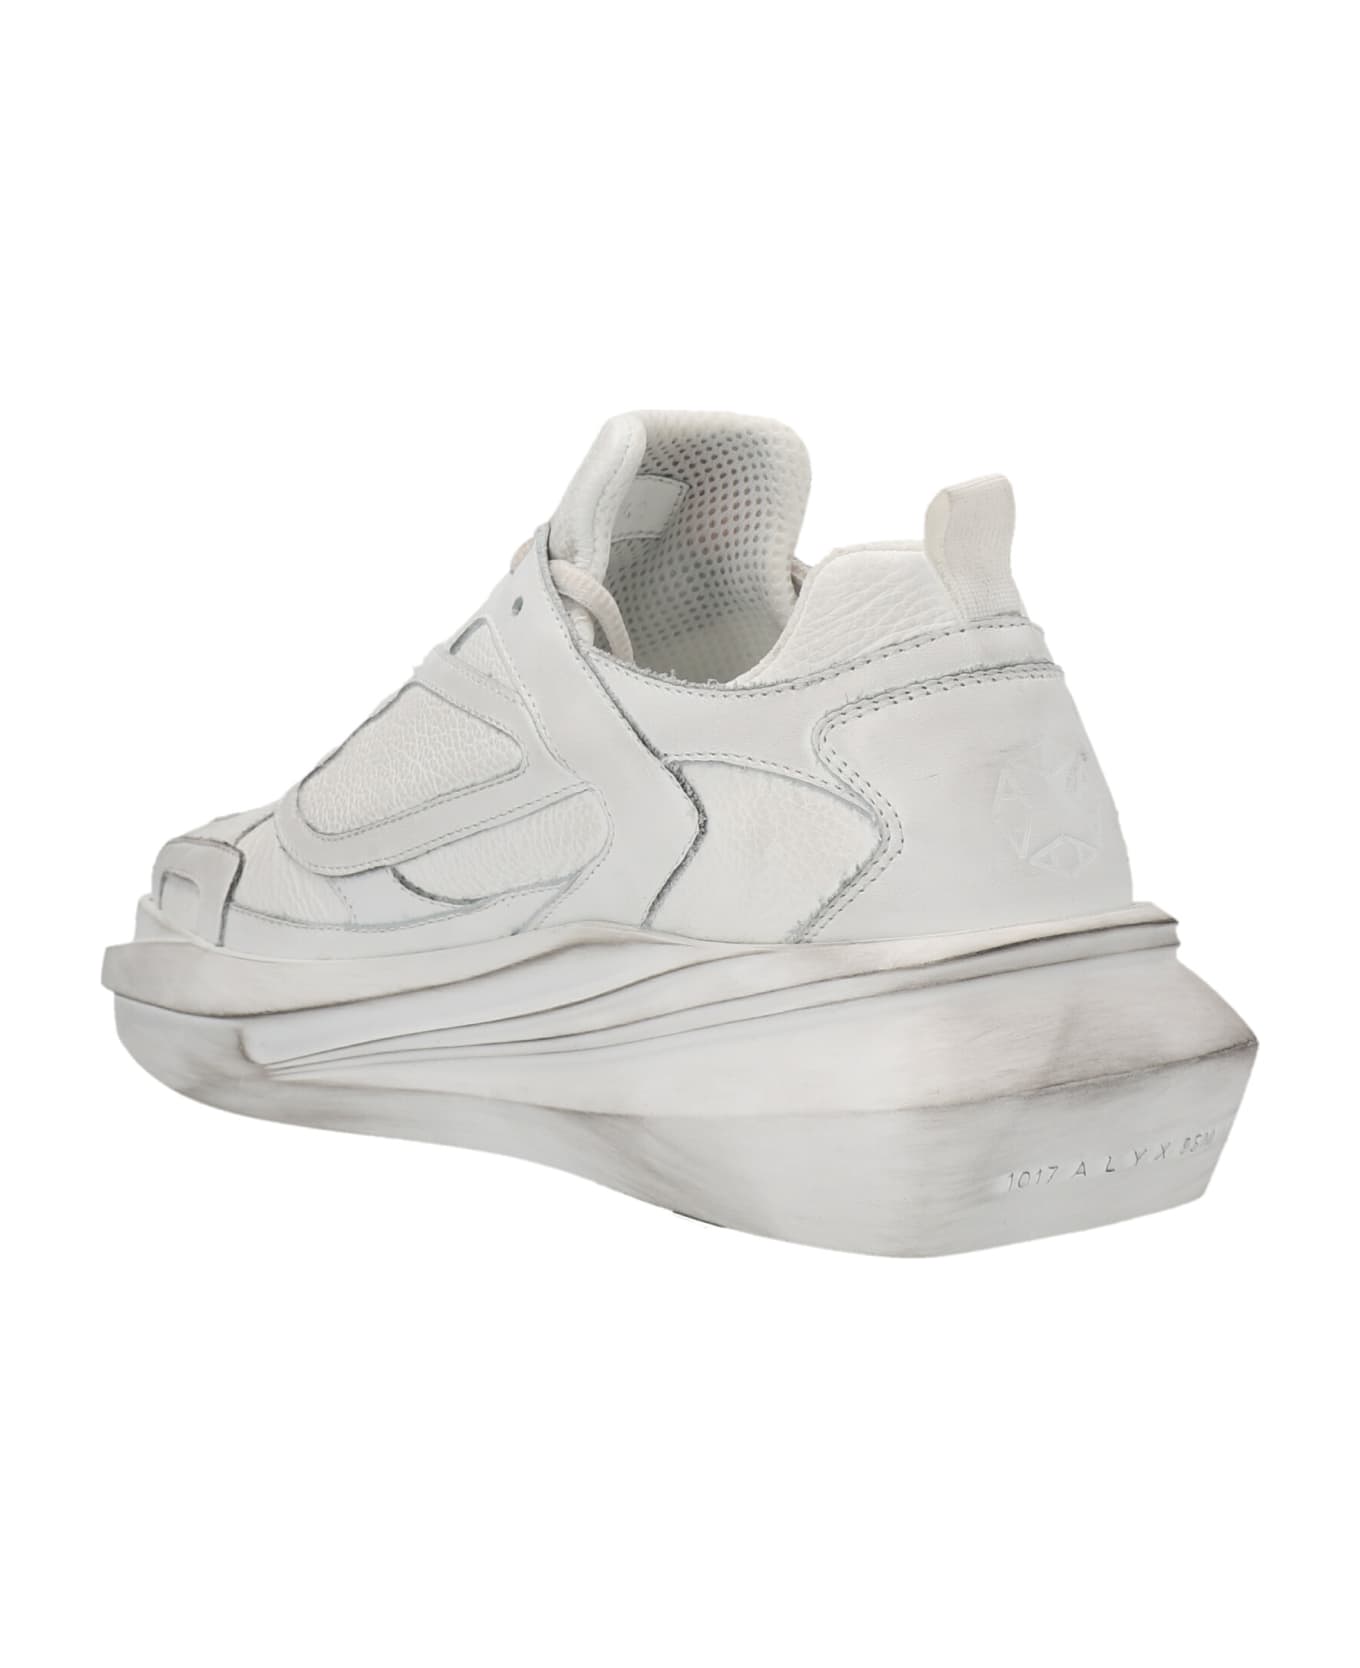 1017 ALYX 9SM 'mono Hiking' Sneakers - White